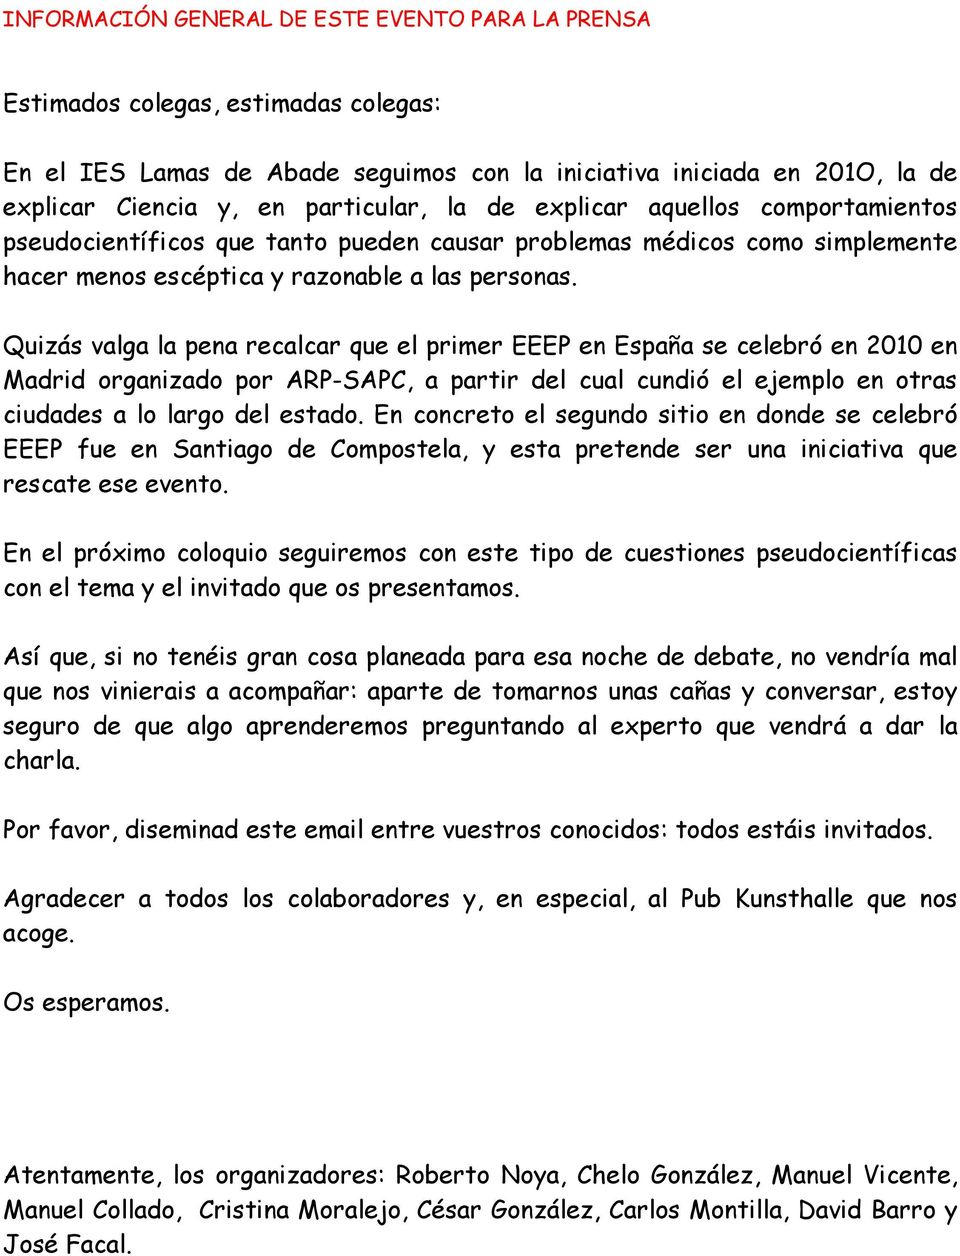 Quizás valga la pena recalcar que el primer EEEP en España se celebró en 2010 en Madrid organizado por ARP-SAPC, a partir del cual cundió el ejemplo en otras ciudades a lo largo del estado.